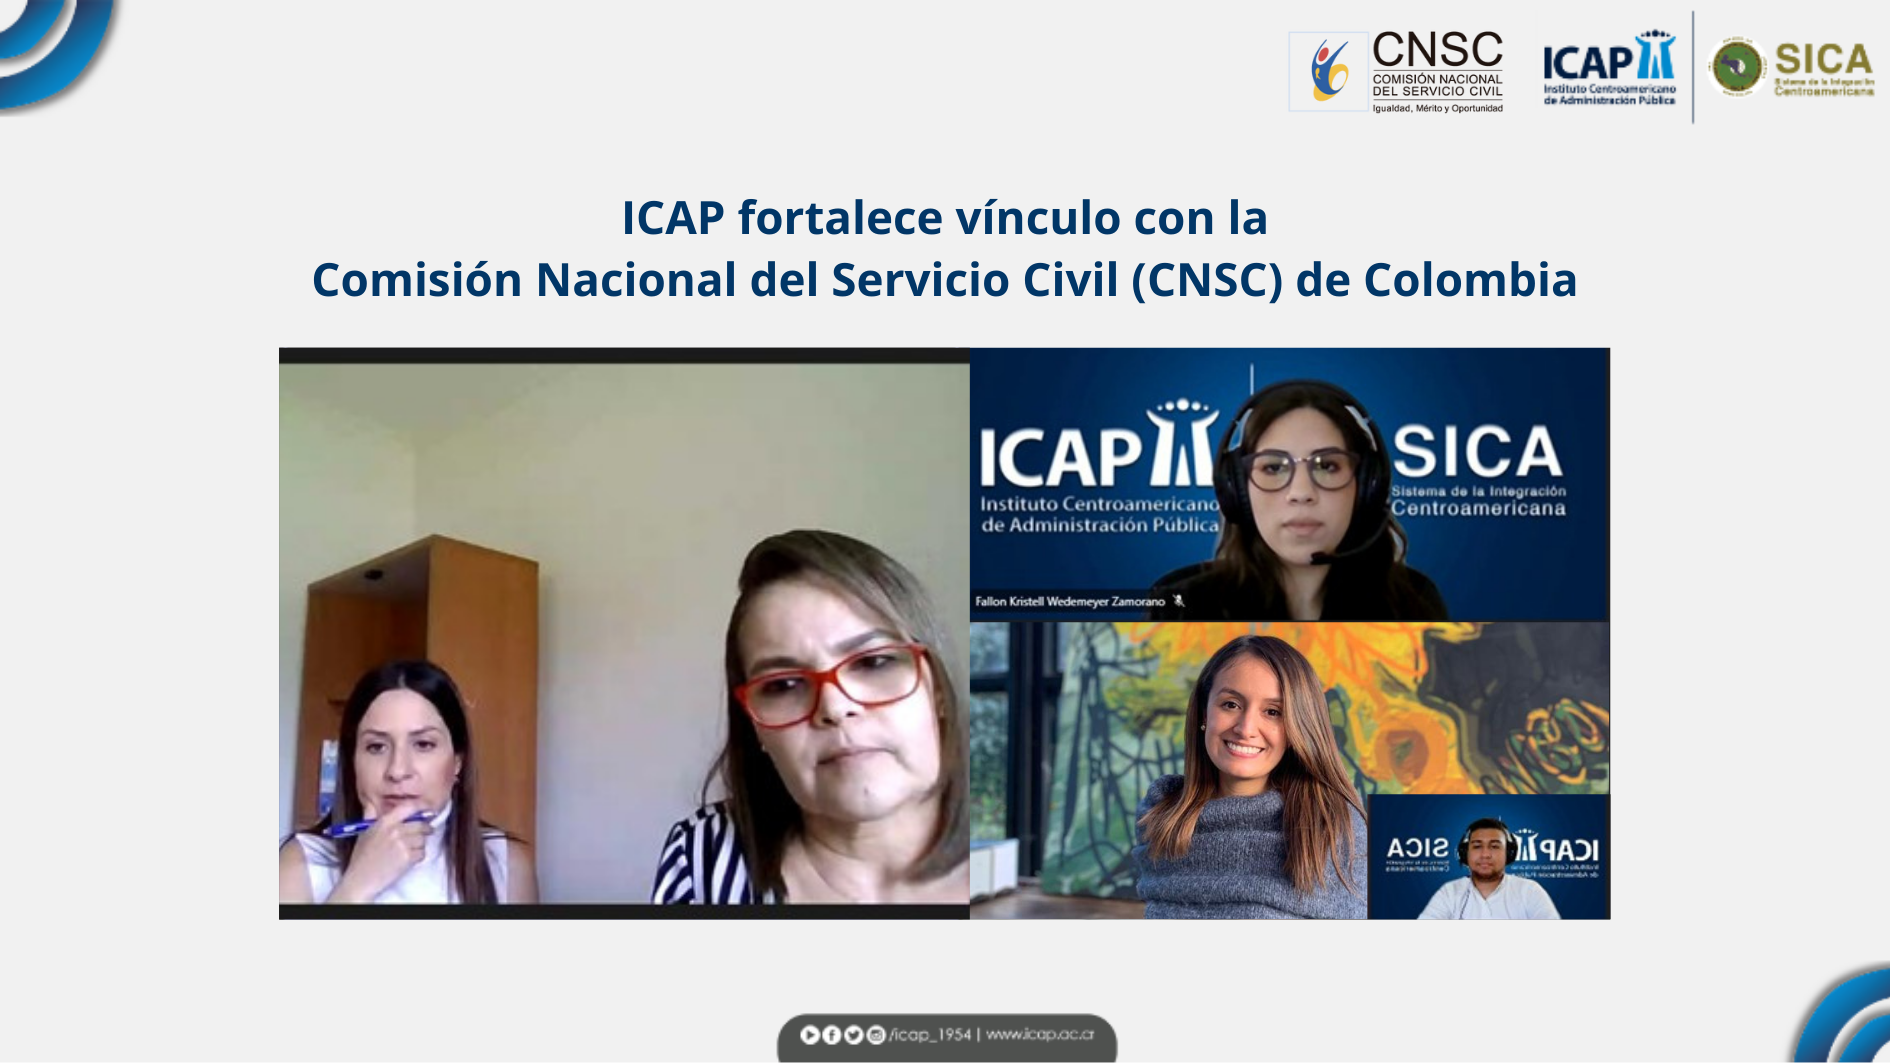 ICAP fortalece vínculo con la Comisión Nacional del Servicio Civil (CNSC) de Colombia